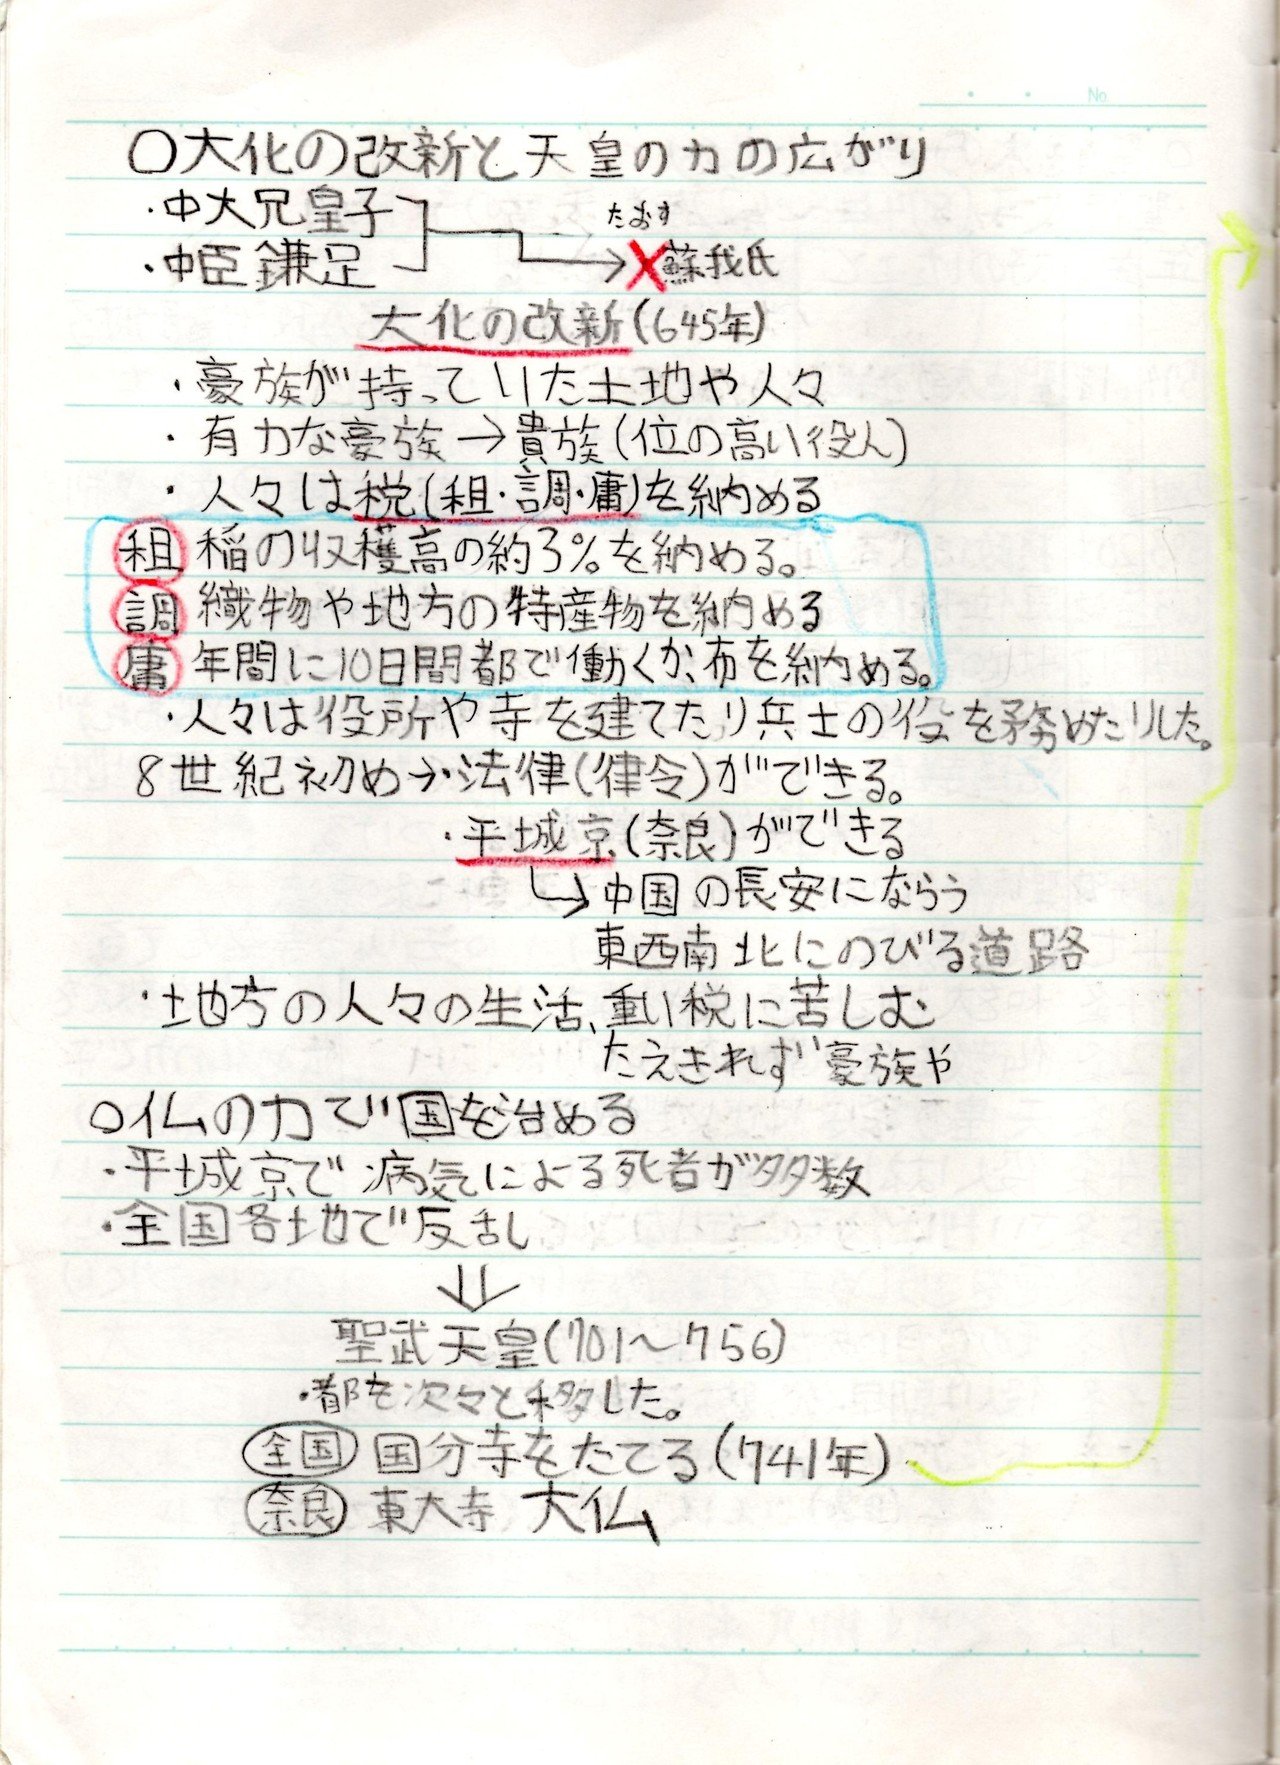 小6の時の社会 日本の歴史 のノート ほしねぇ Note